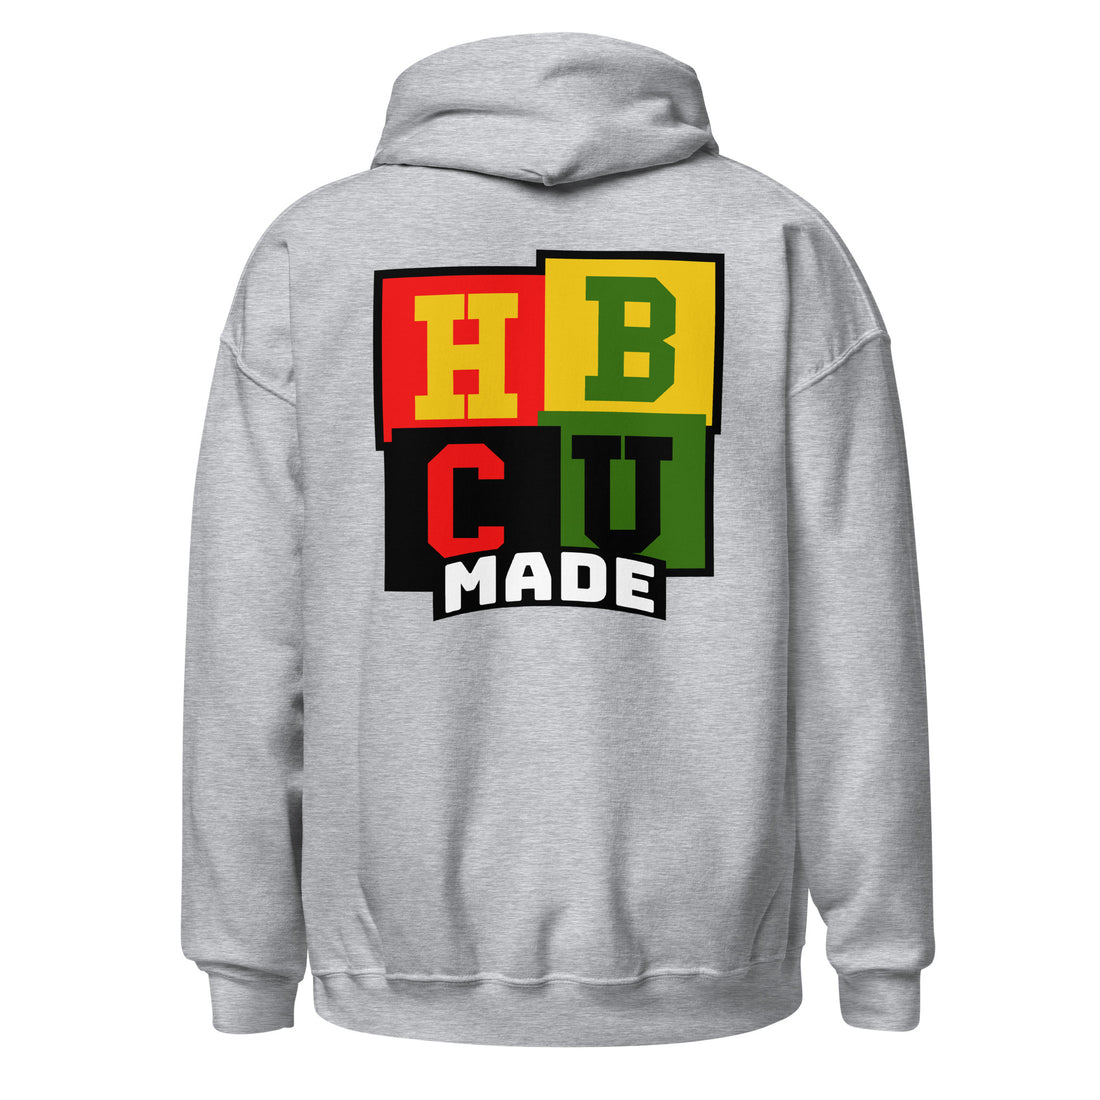 HBCU Made